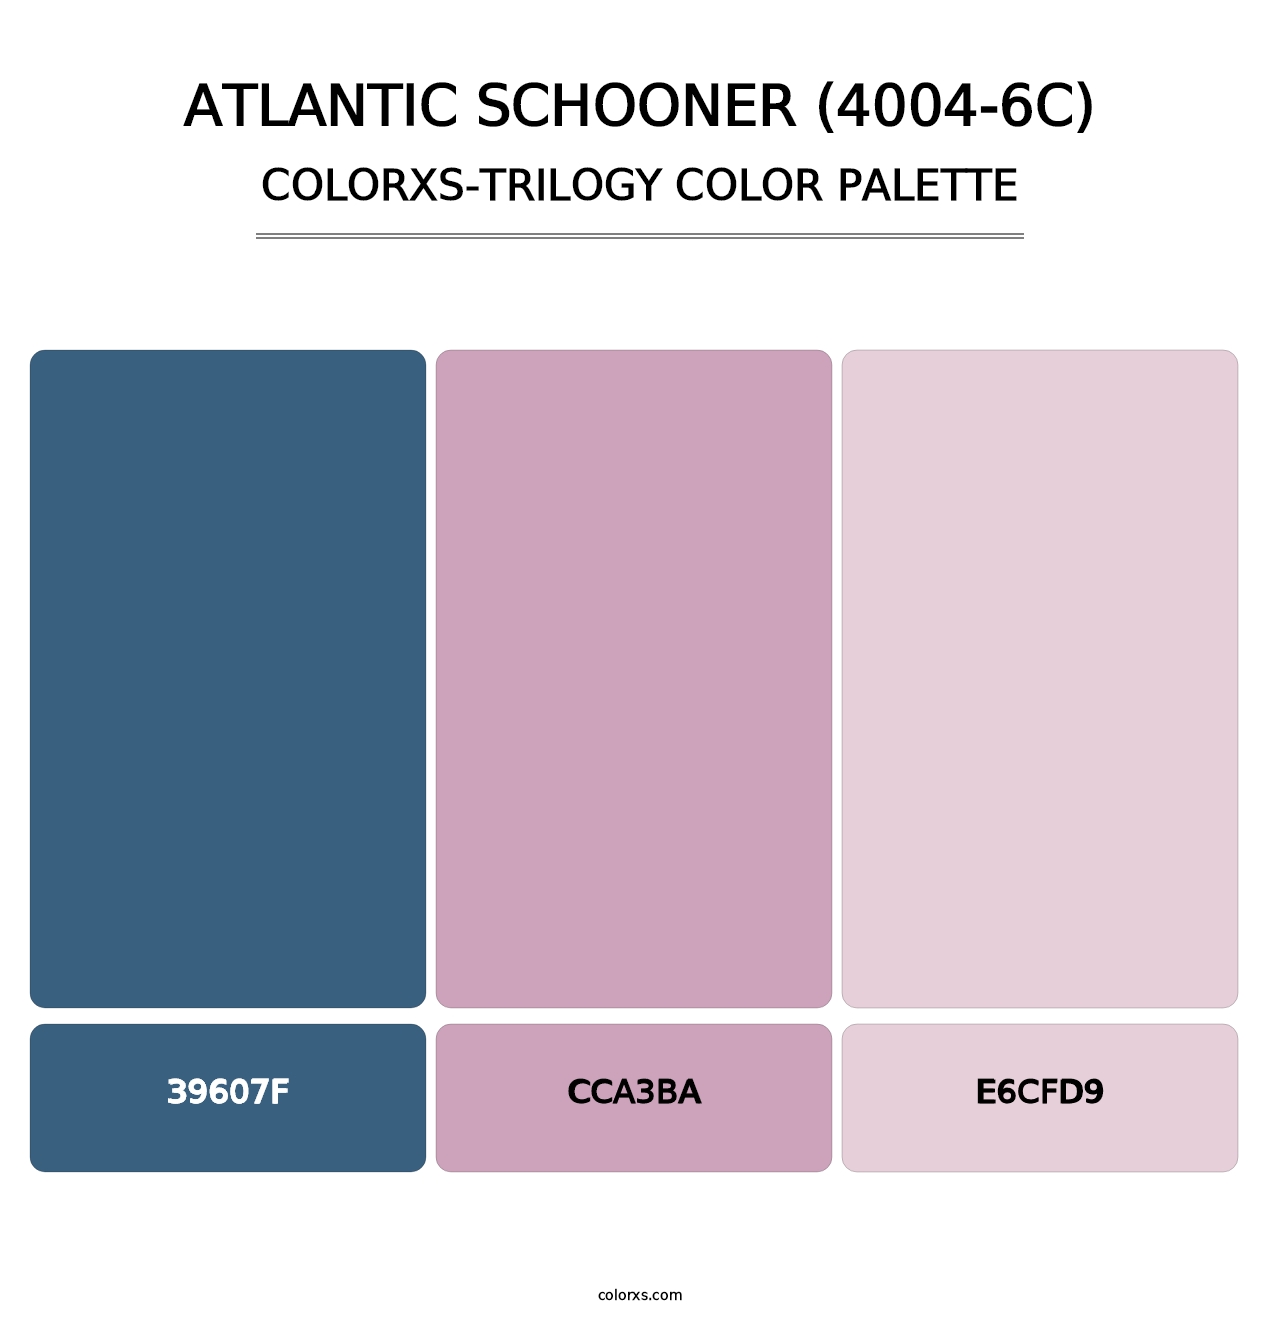 Atlantic Schooner (4004-6C) - Colorxs Trilogy Palette